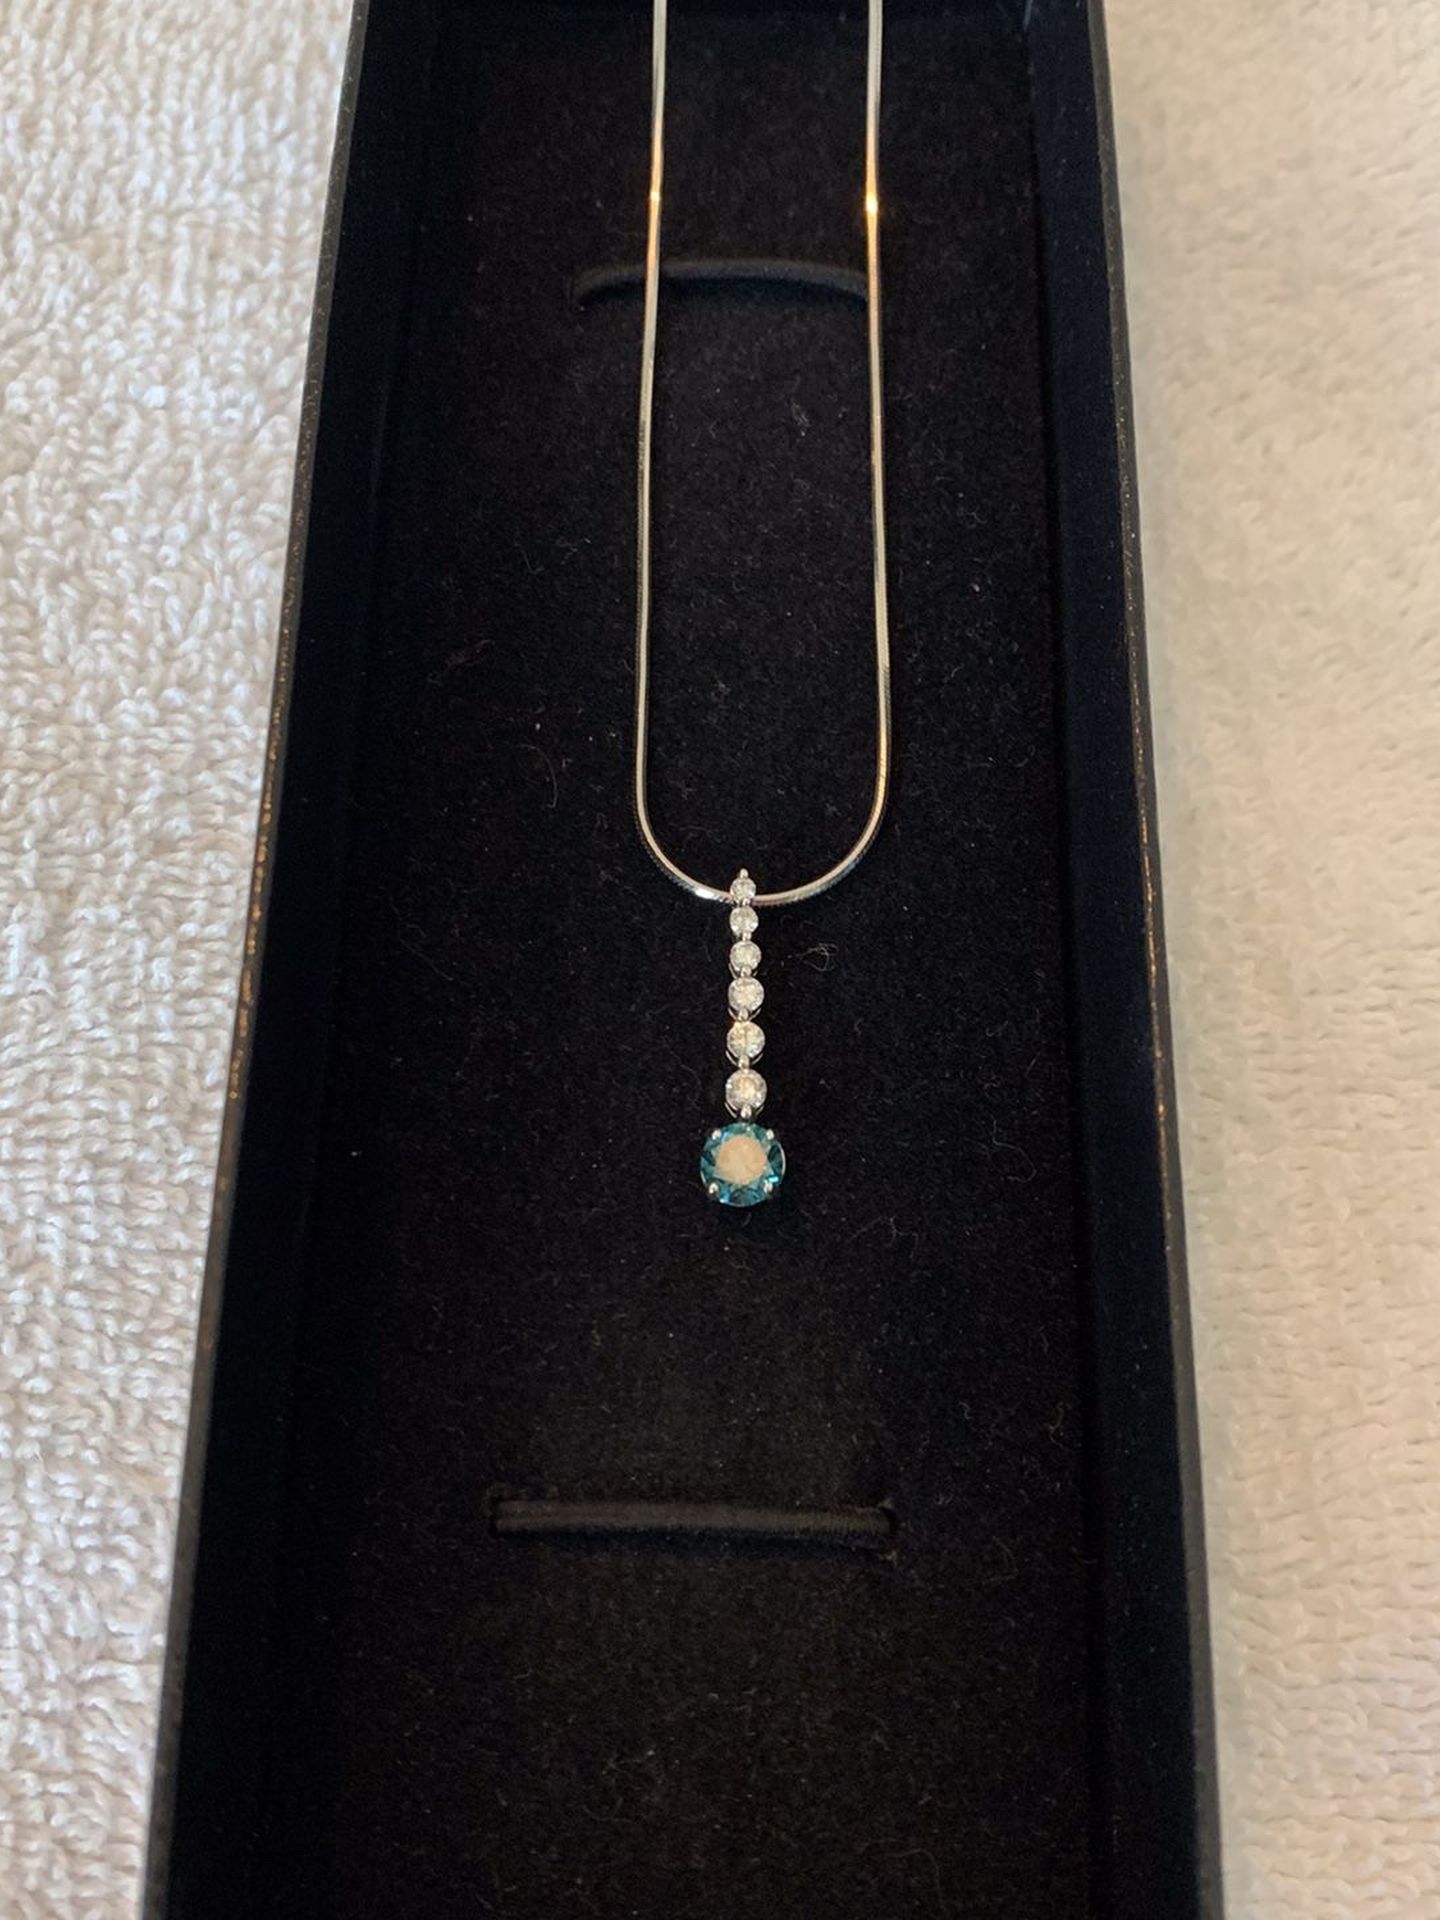 Blue diamond pendant necklace. Still For Sale. DIAMONDS.